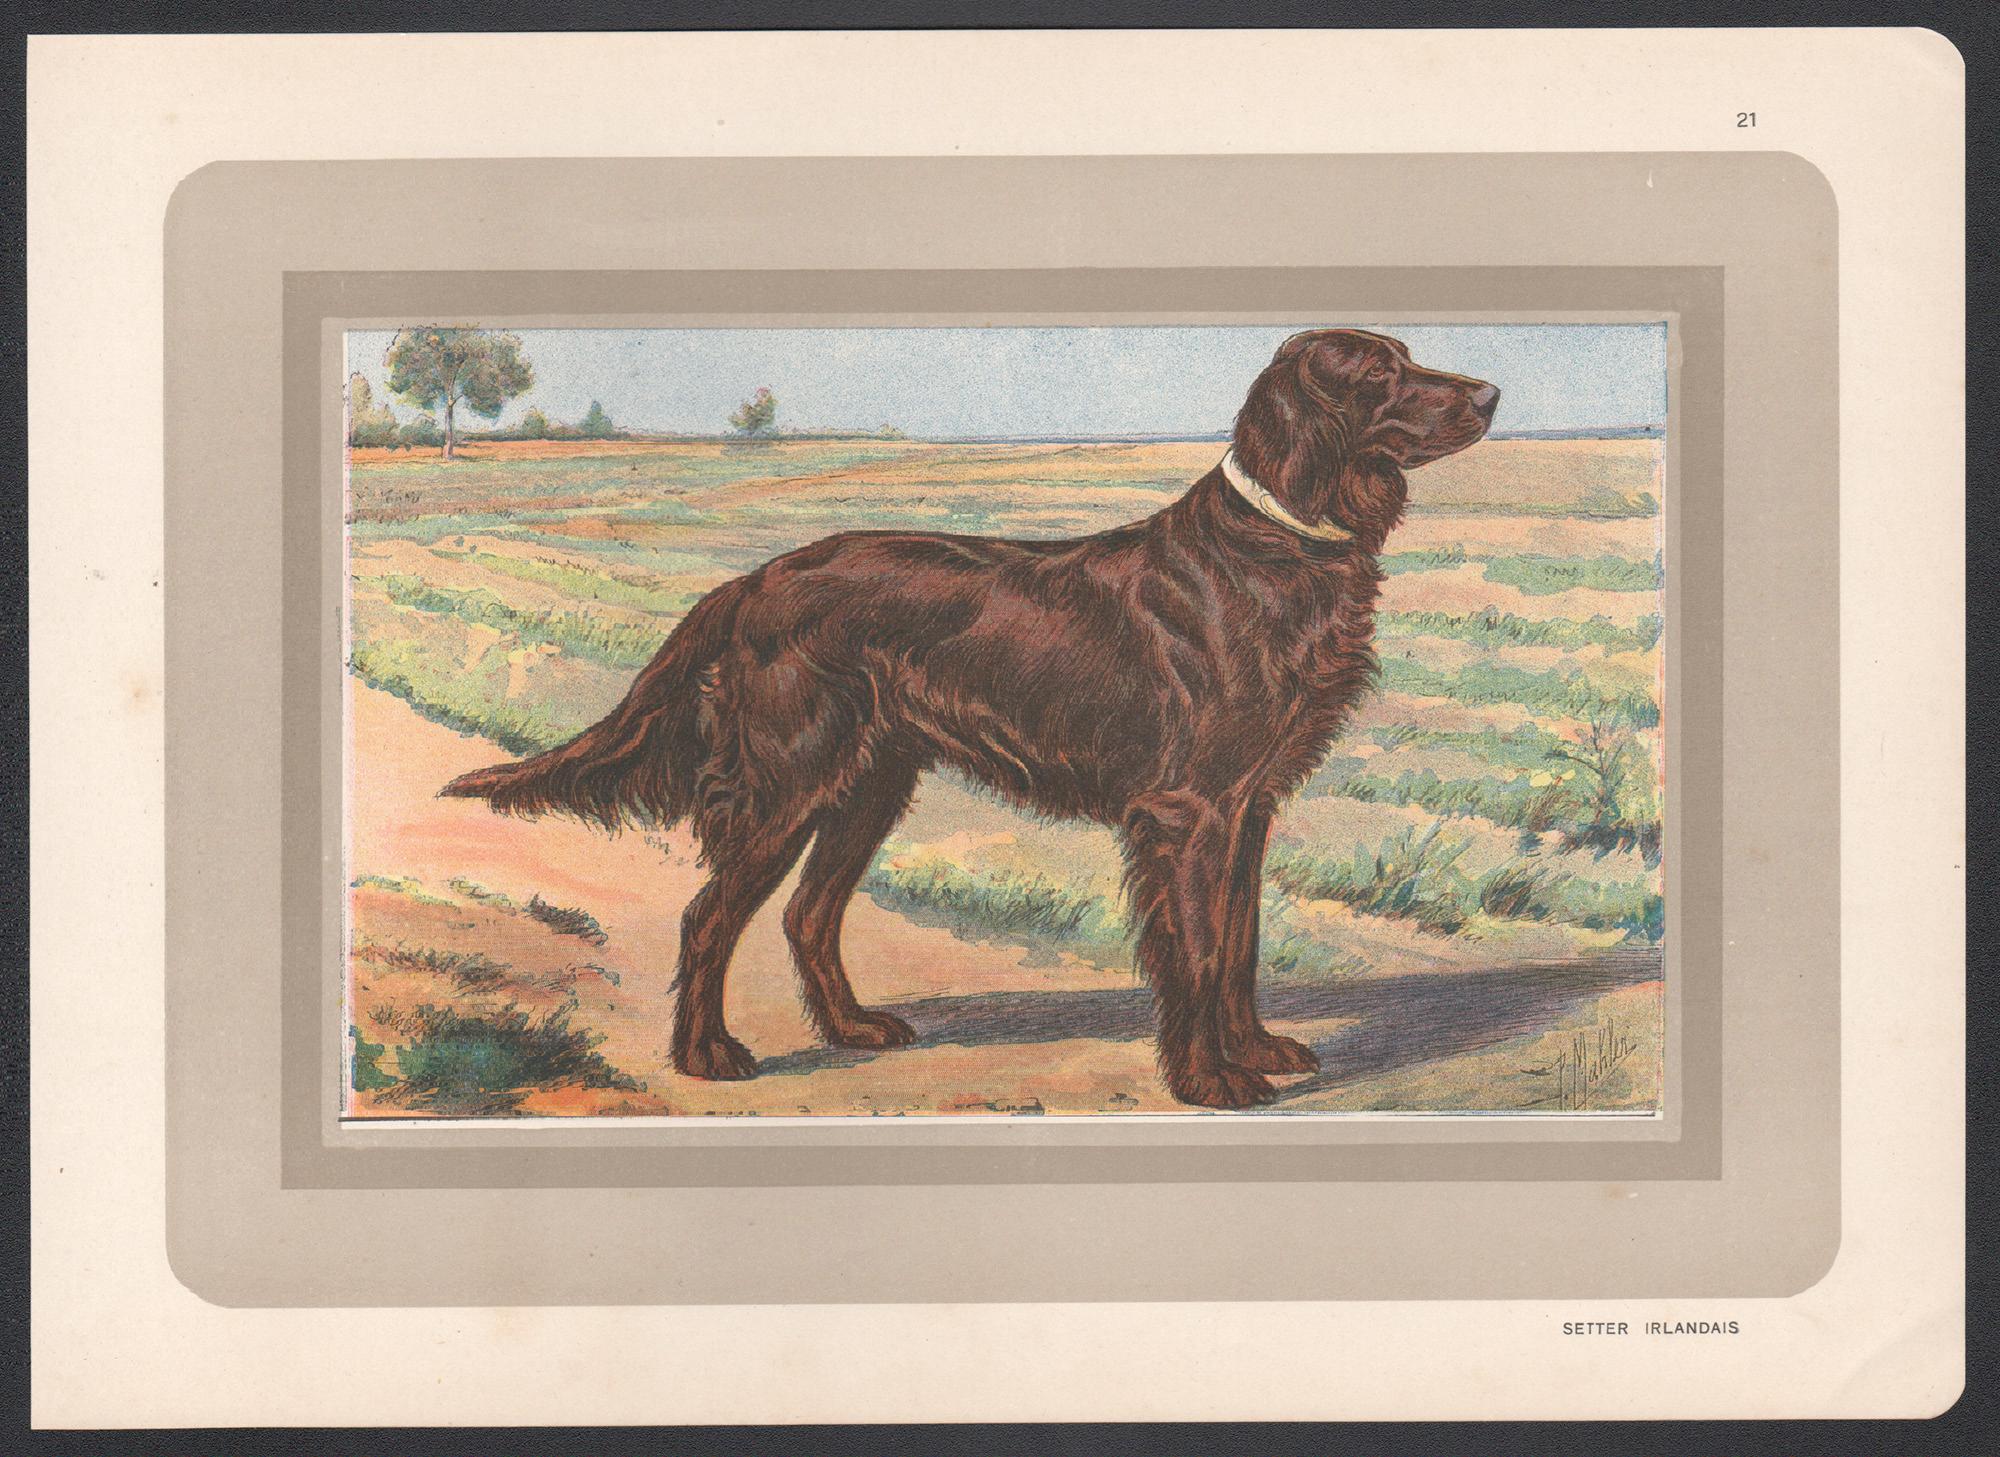 Irish Setter, impression chromolithographie d'un chien de chasse français, années 1930 - Print de P. Mahler